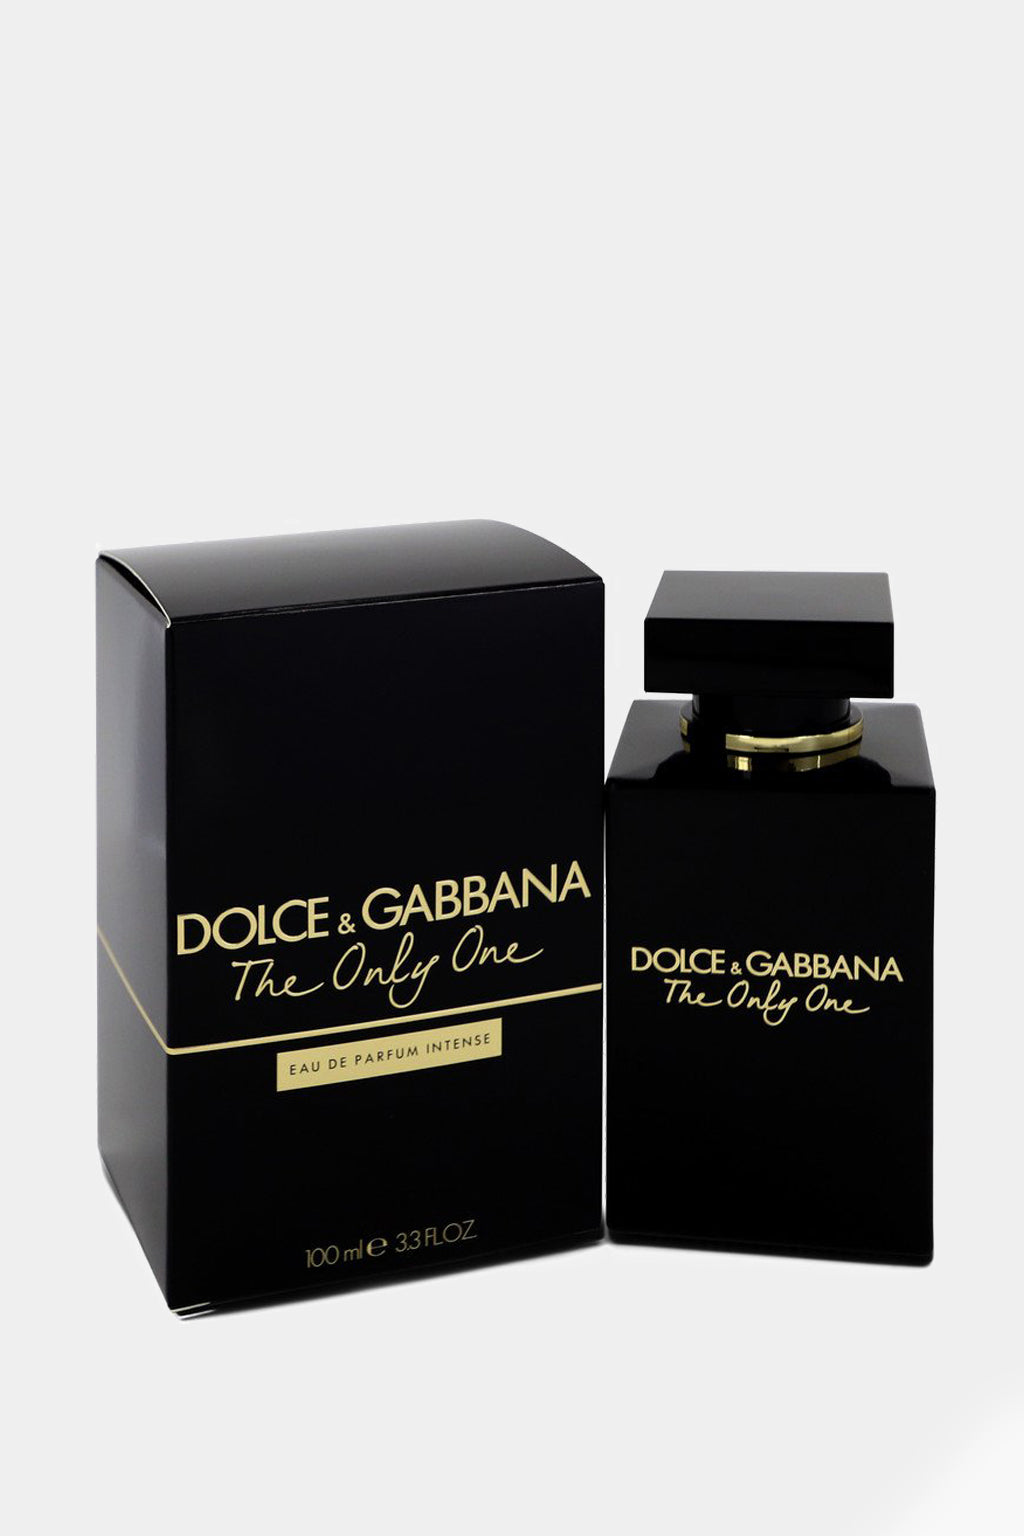 Dolce & Gabbana - The Only One Intense Eau de Parfum